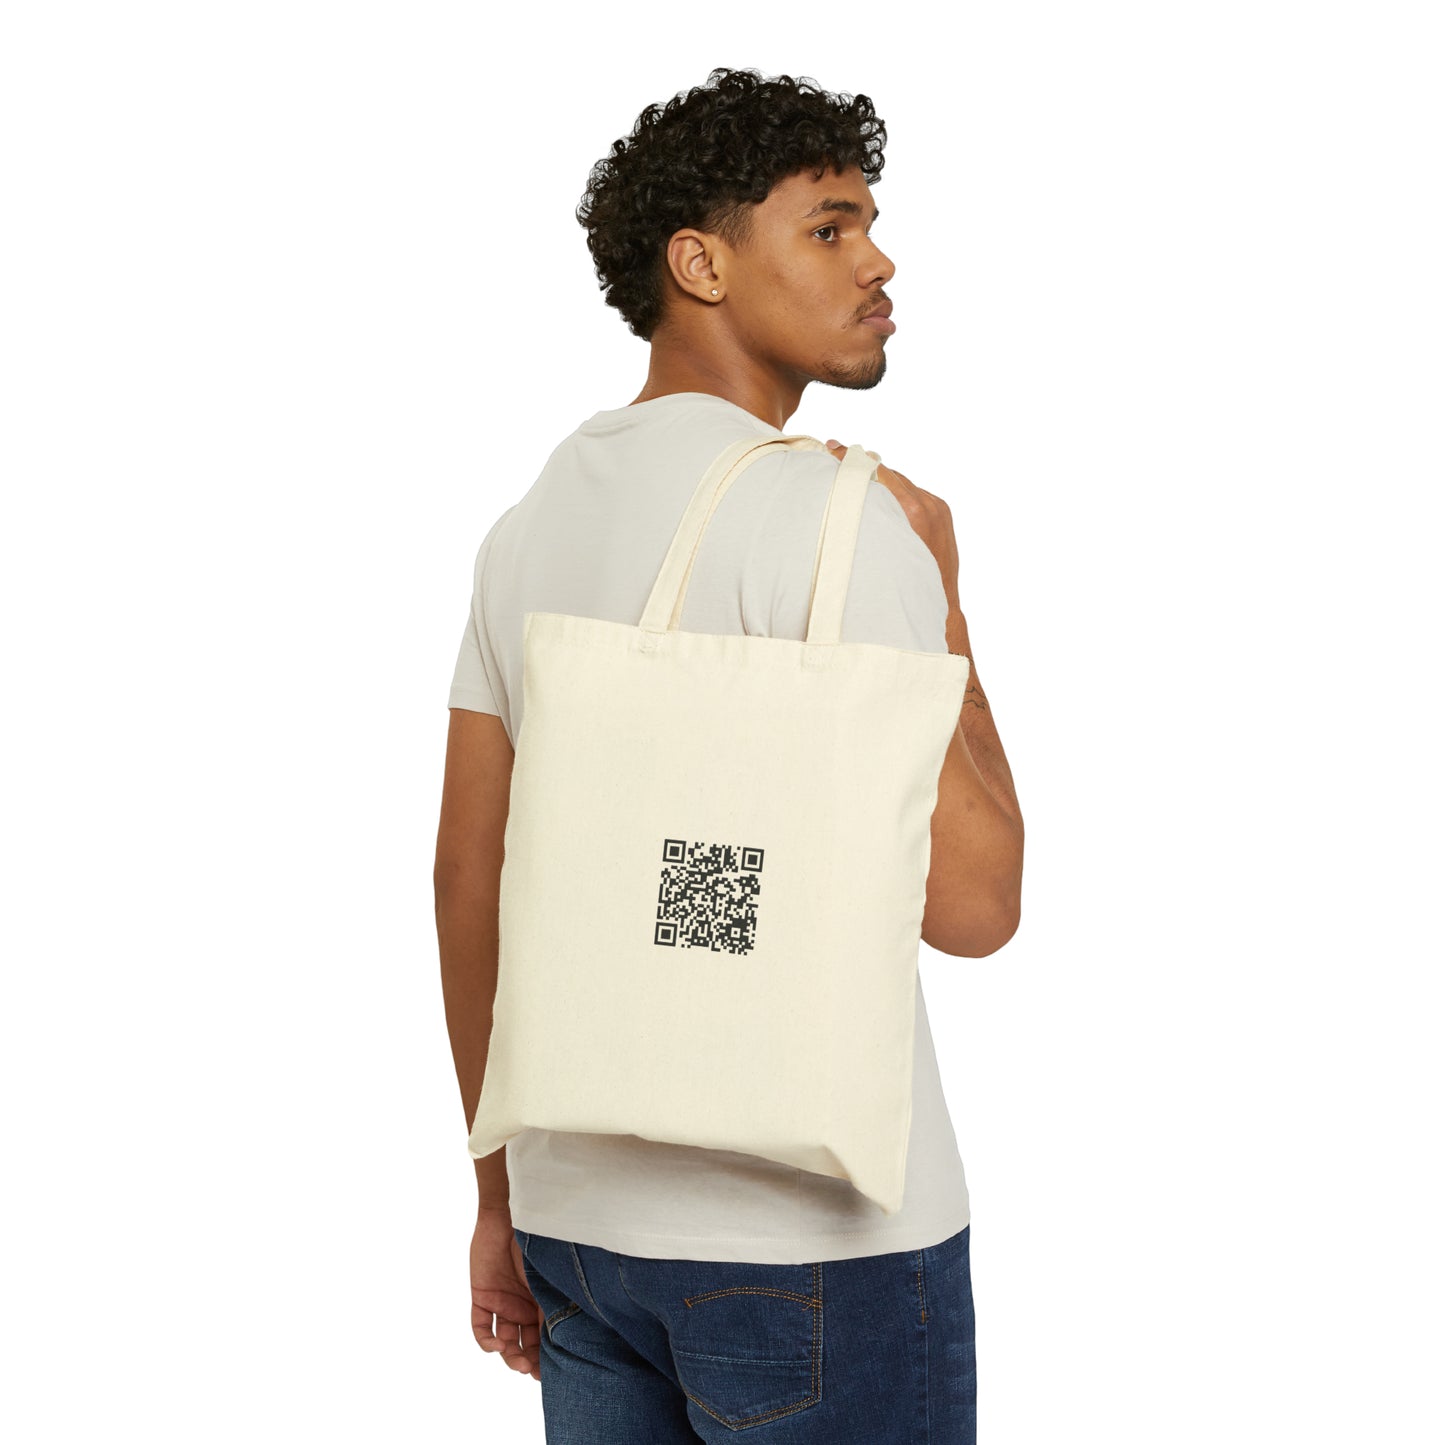 Antidote Illusions - Cotton Canvas Tote Bag